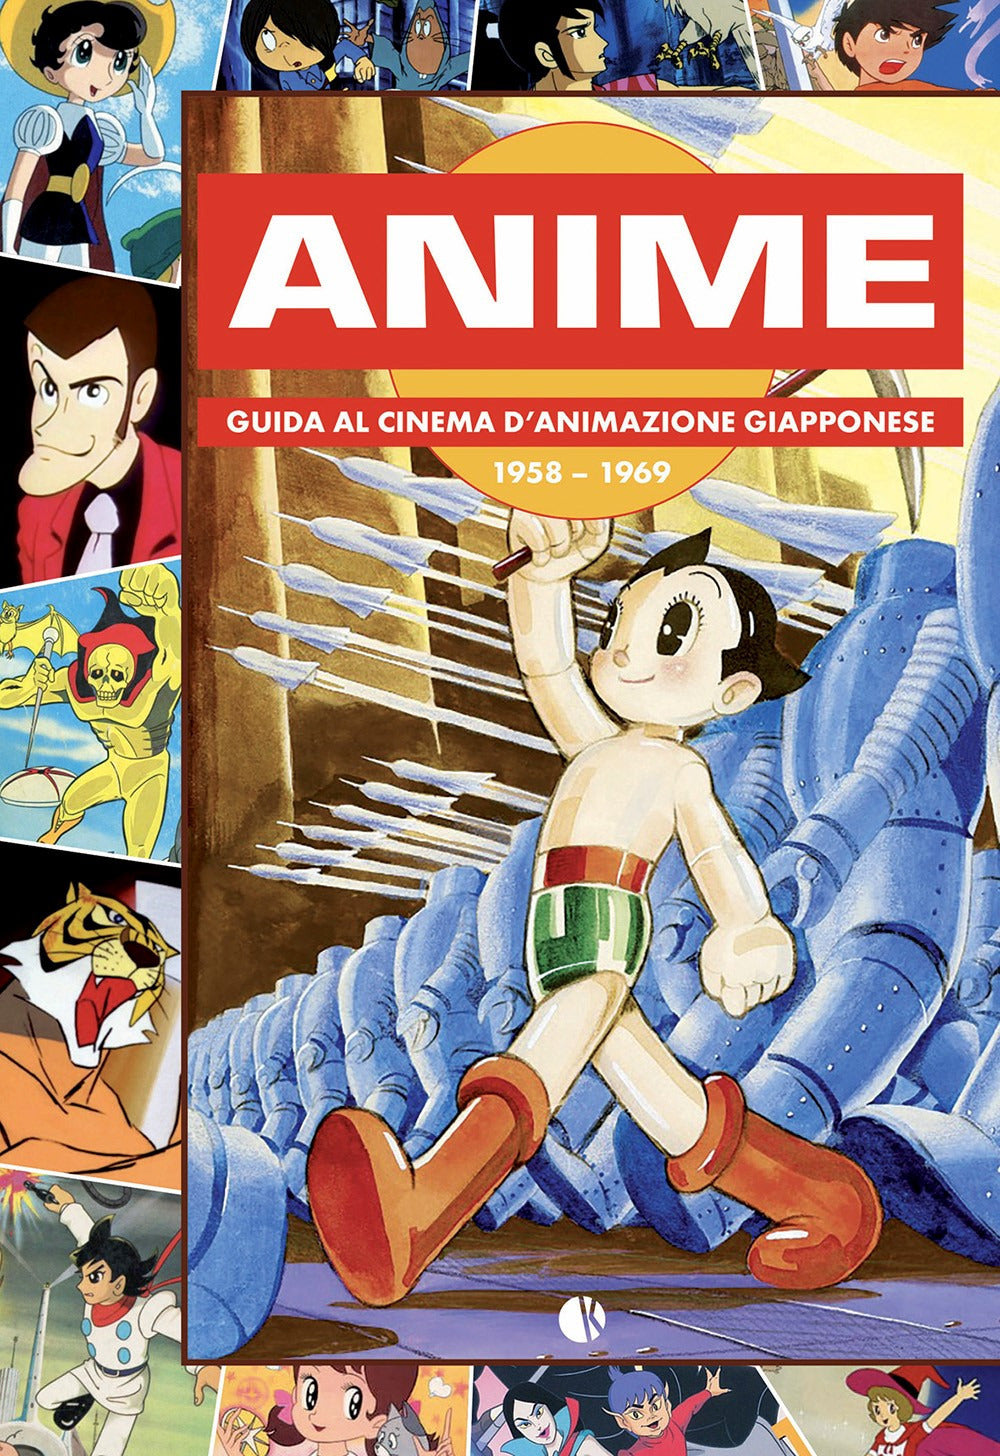 Anime. Guida al cinema d'animazione giapponese 1958-1969.